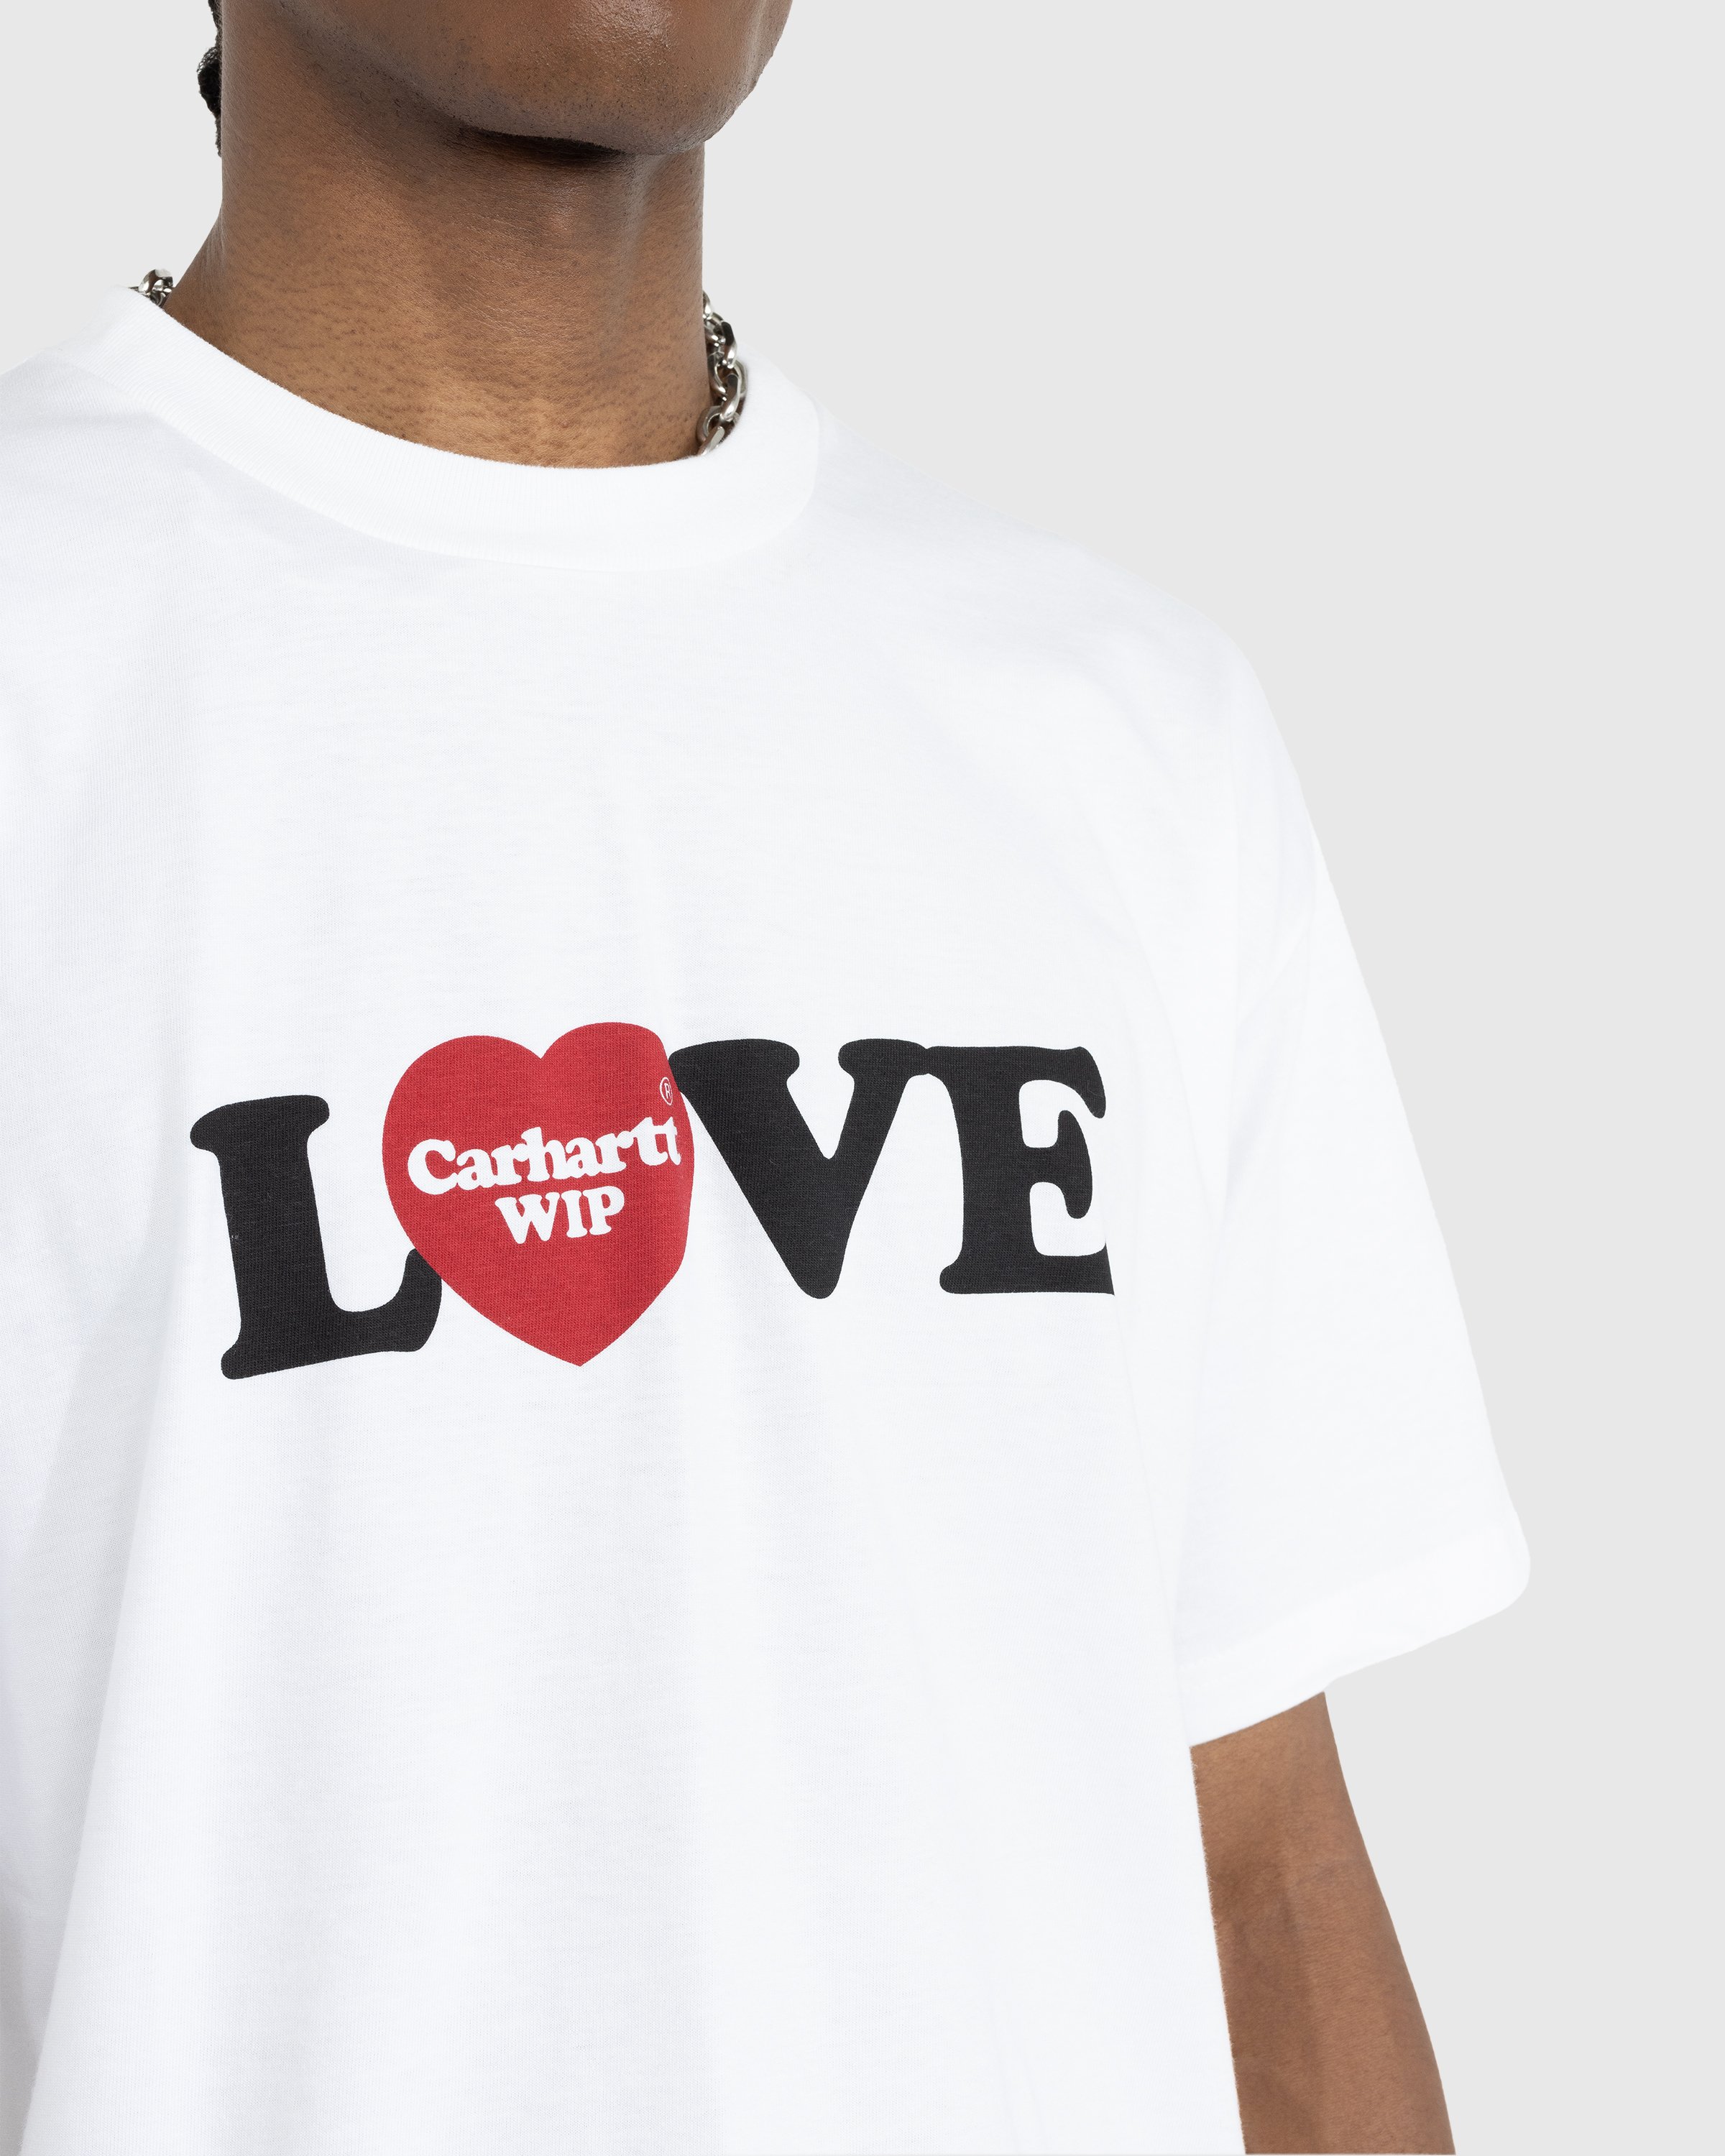 Carhartt WIP - S/S Love T-Shirt White - Clothing - White - Image 4